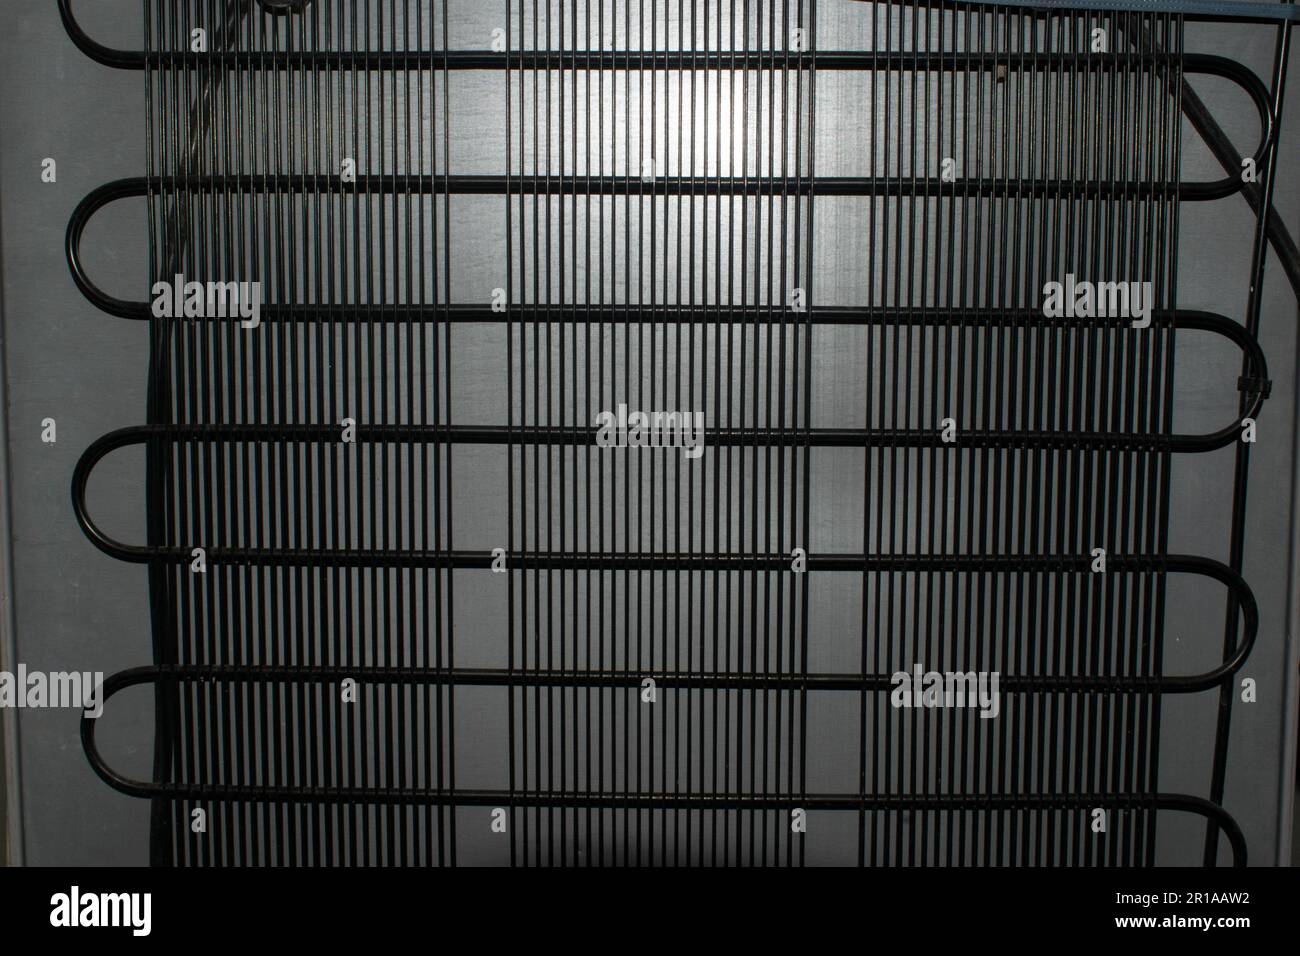 Serpentina frigo immagini e fotografie stock ad alta risoluzione - Alamy